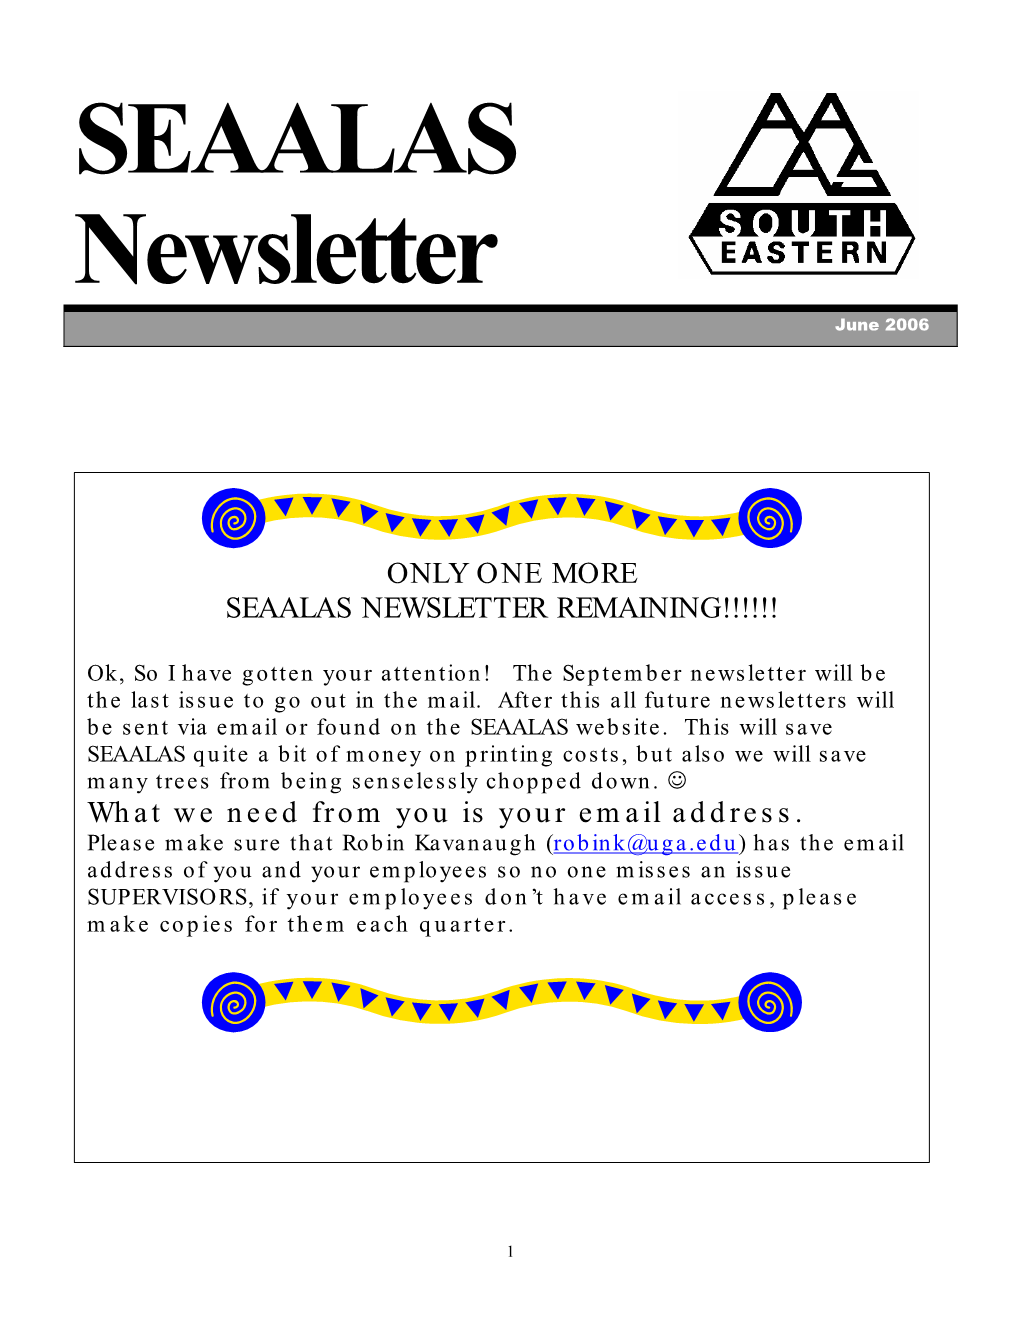 SEAALAS Newsletter June 2006